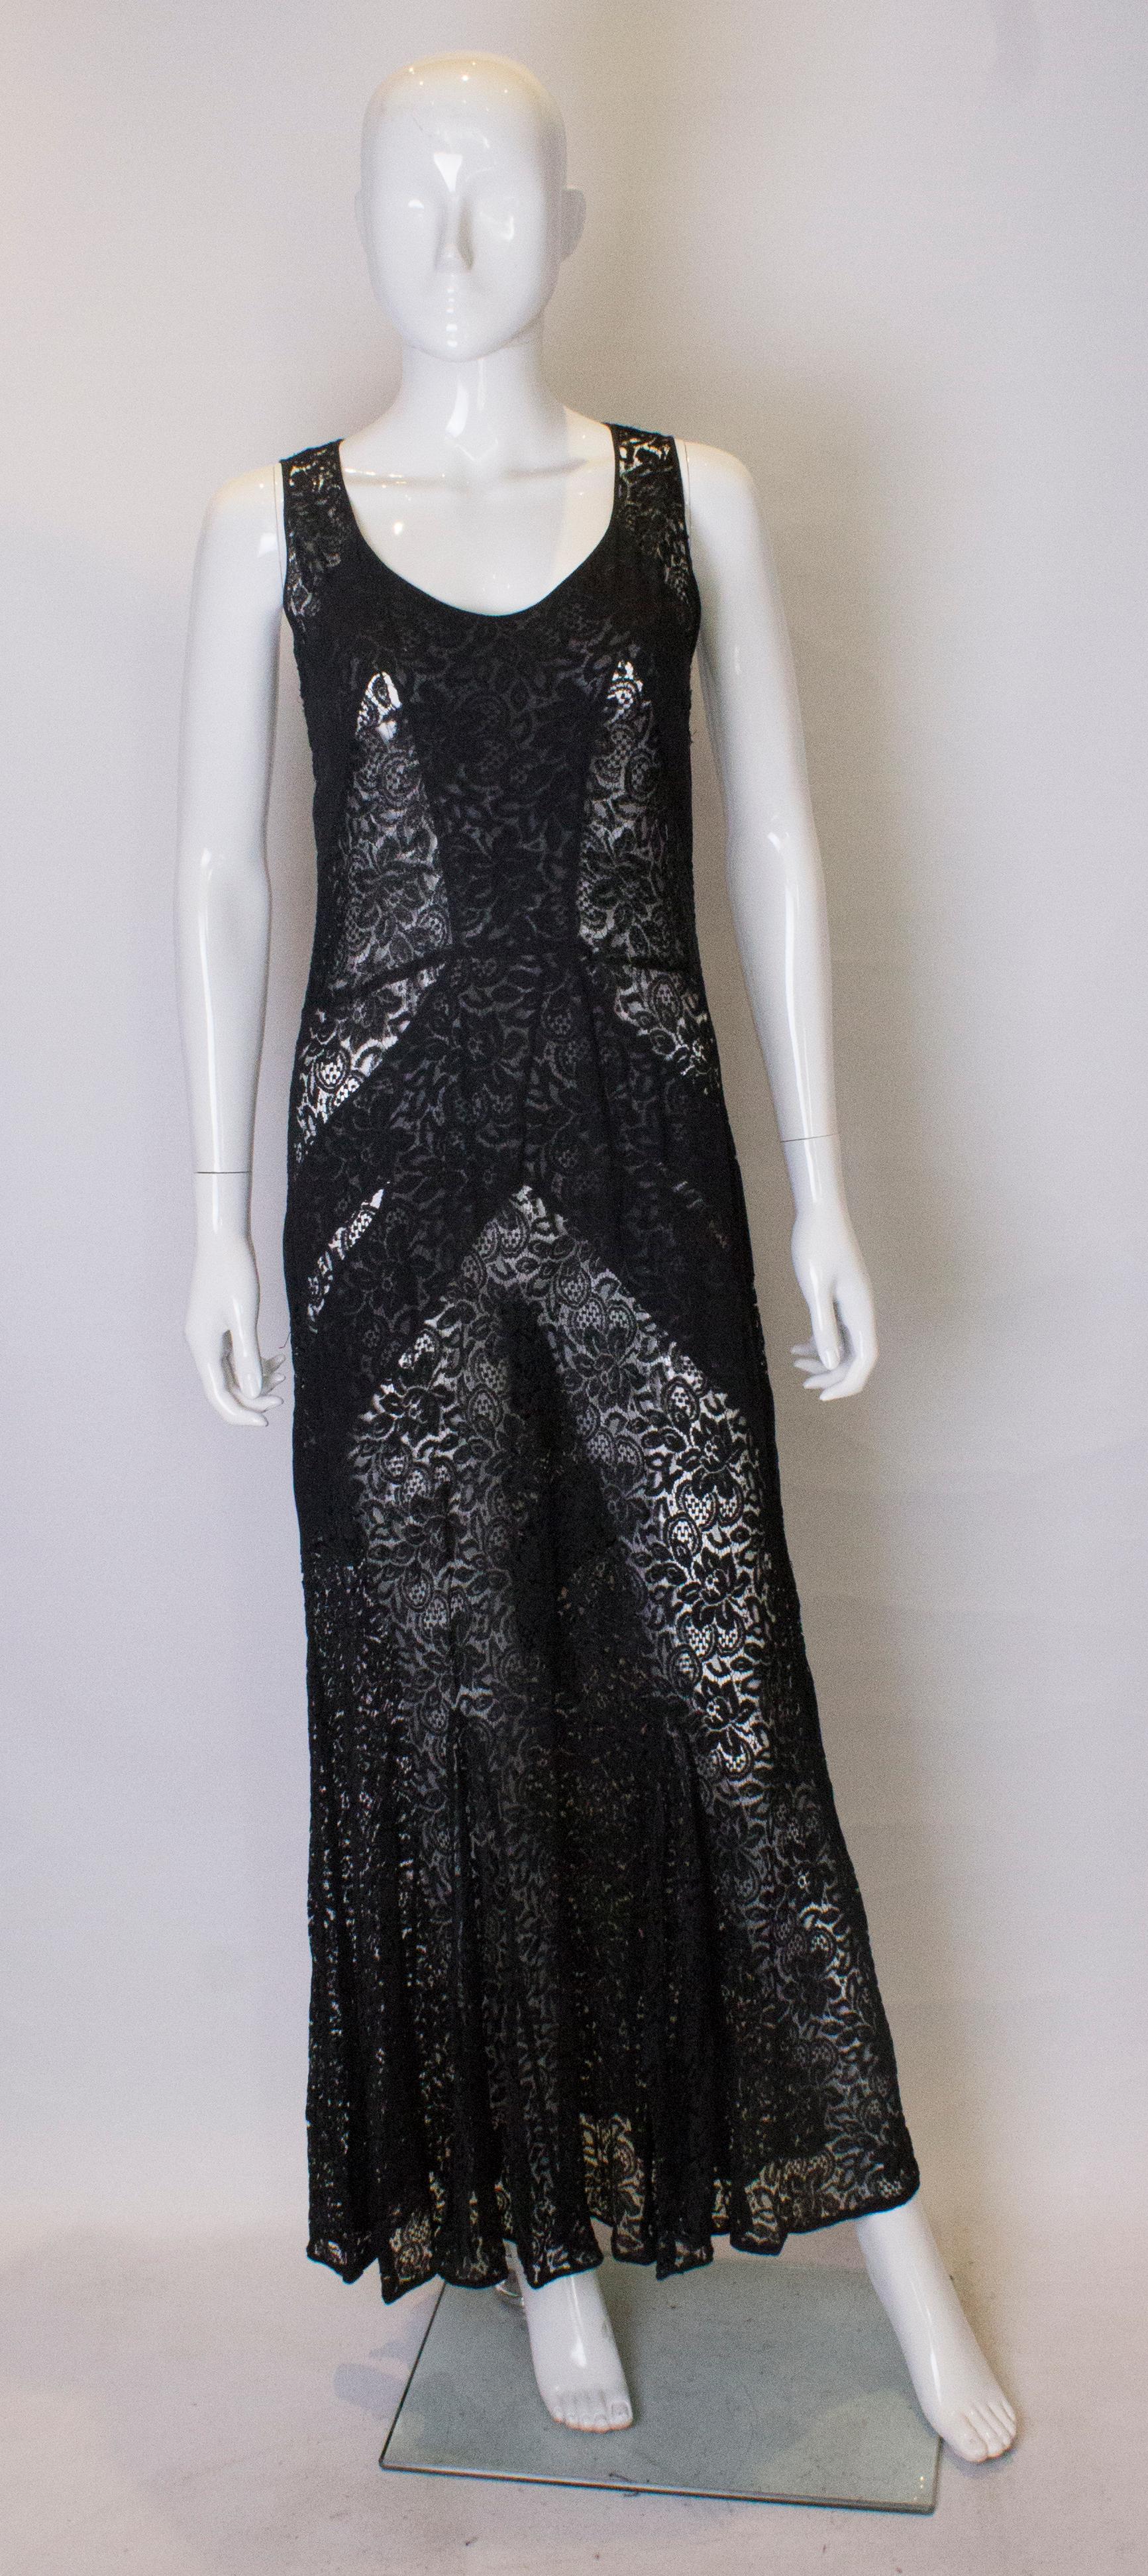 Ein schickes schwarzes Spitzenkleid aus den 1930er Jahren. Das Kleid hat vorne einen Rundhalsausschnitt, ist mit Spitzeneinsätzen versehen und hat einen Spitzenrock. Der Saum ist mit einem Band eingefasst.